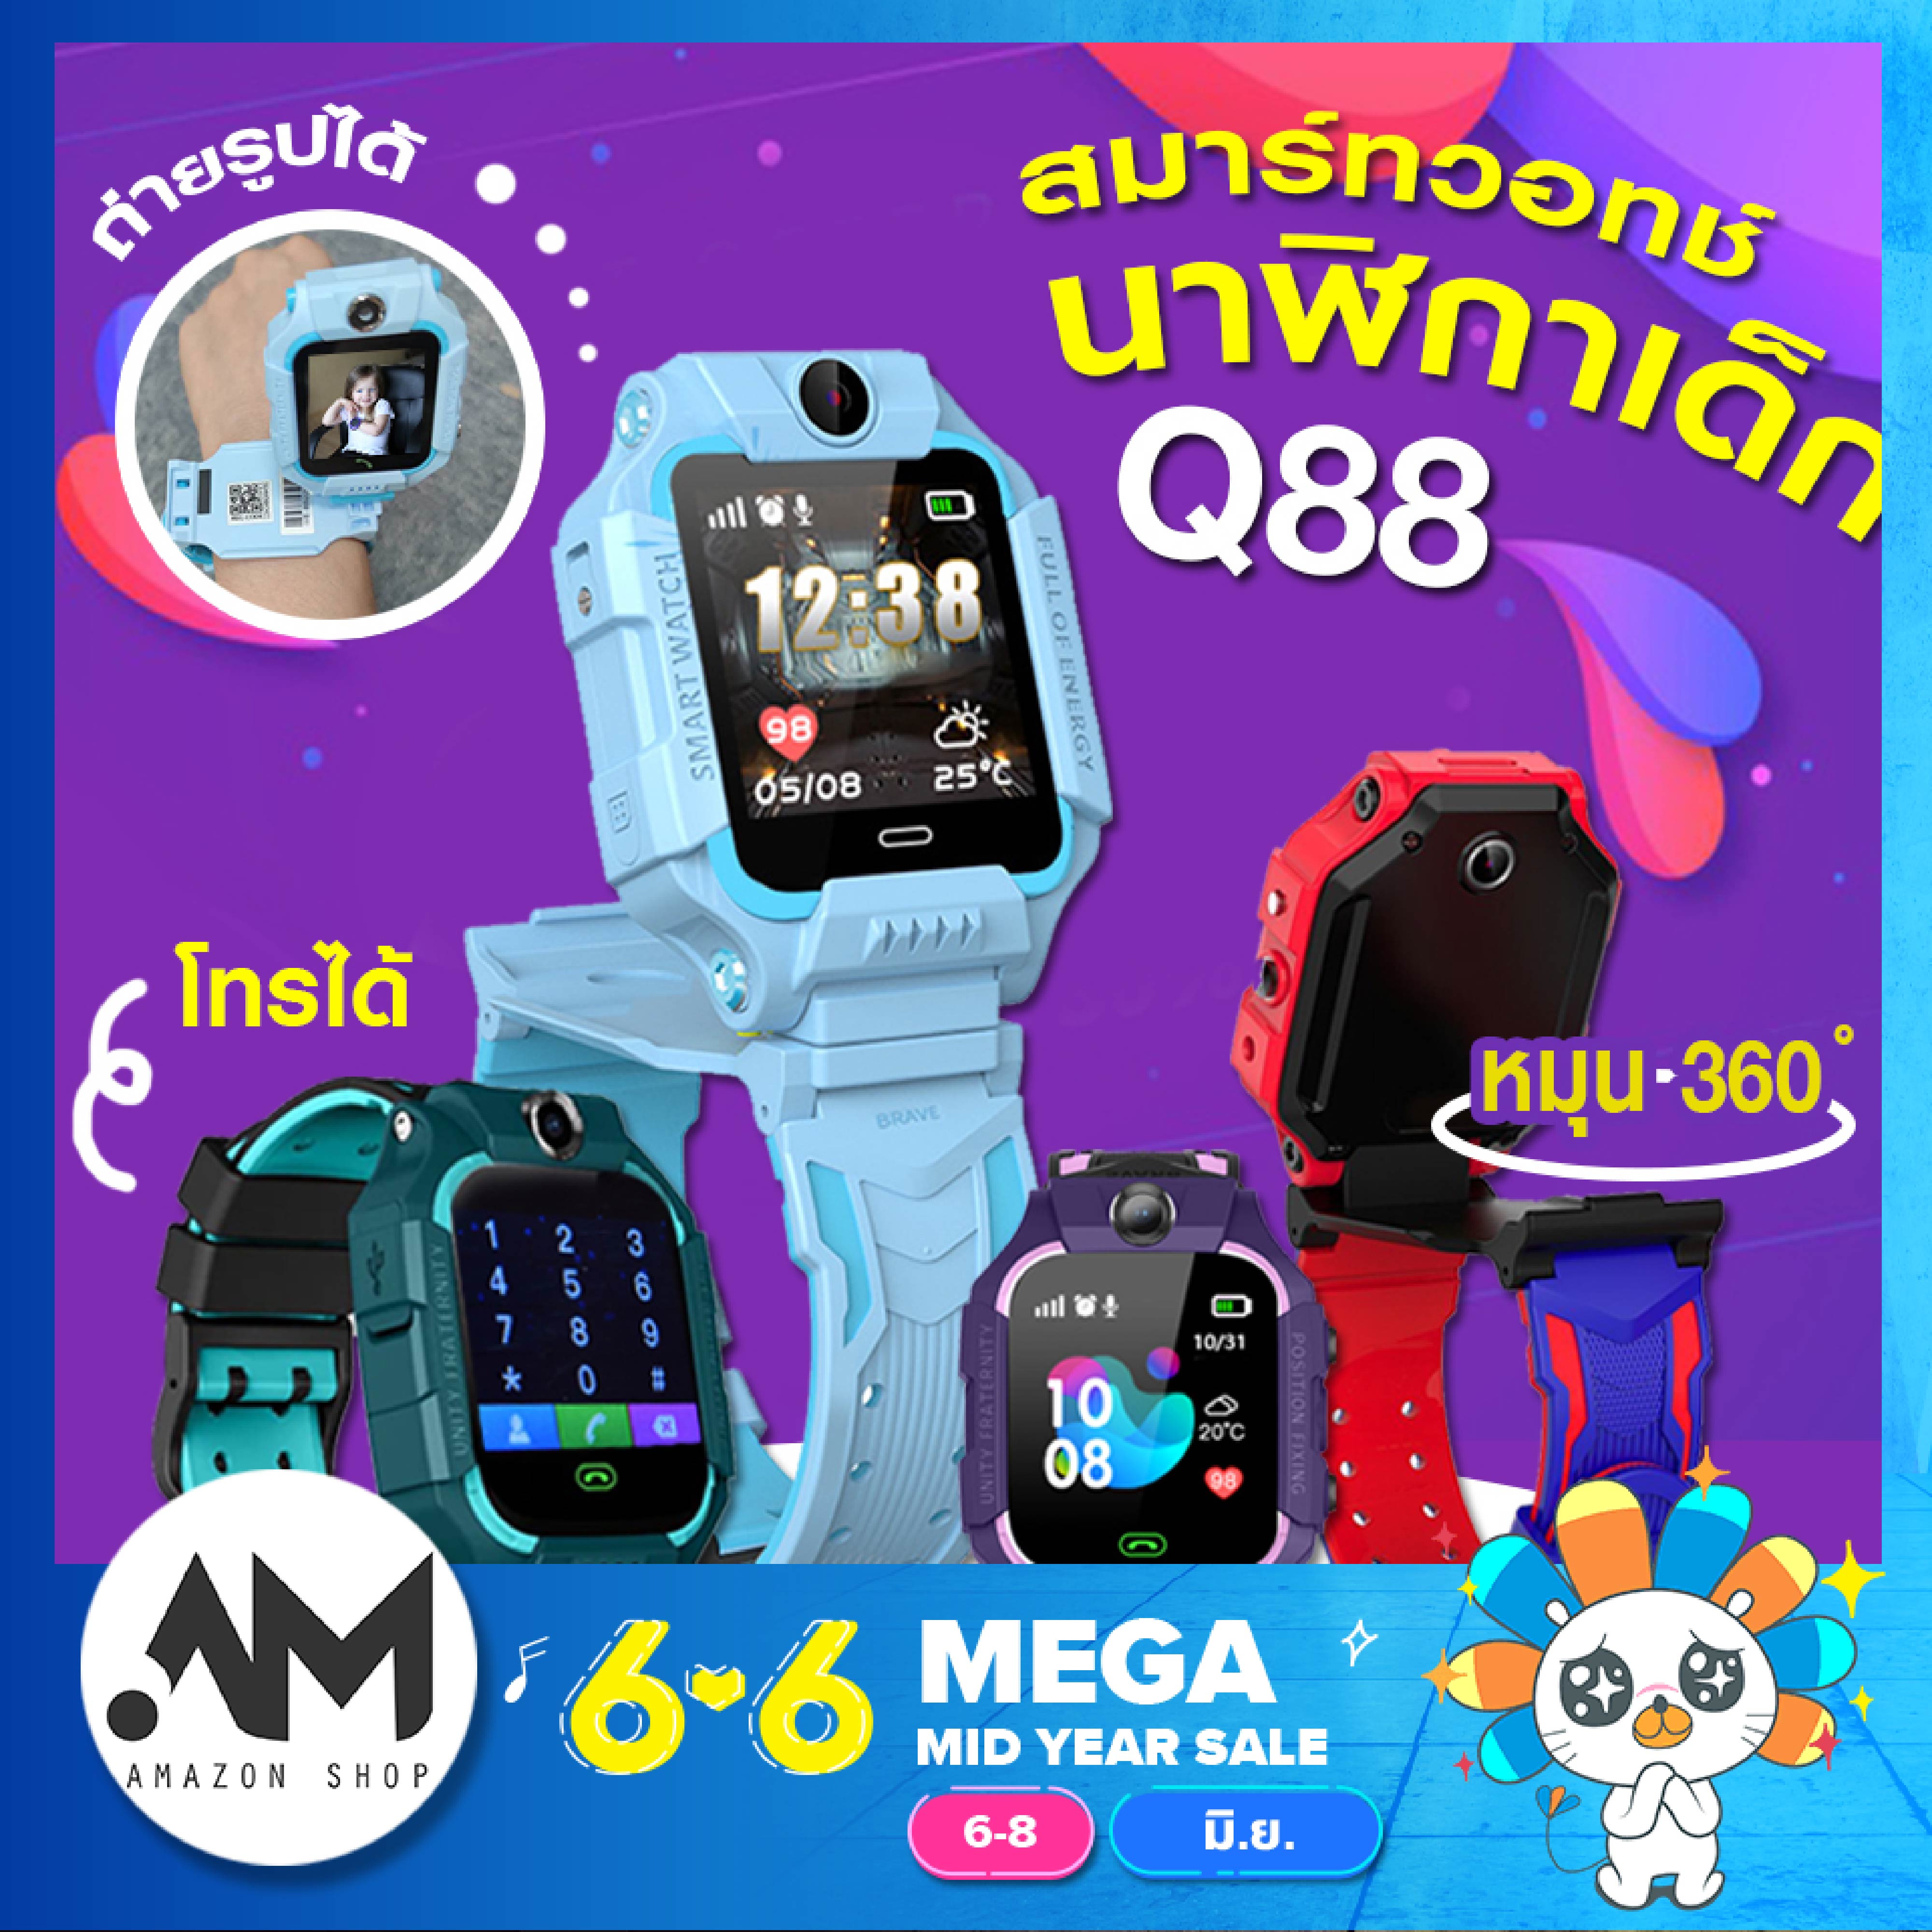 【ส่งจากประเทศไทย】smart watch Q88 สมาร์ทวอทช์ นาฬิกาไอโมเด็ก นาฬิกาโทรได้ นาฬิกาไอโม่ นาฬิกา imoo เด็ก หน้าจอยกได้ เมนูภาษาไทย ถ่ายรูปได้ ใส่ซิมได้ โทรเข้า-ออกได้ Smart Kids - AmazonShop